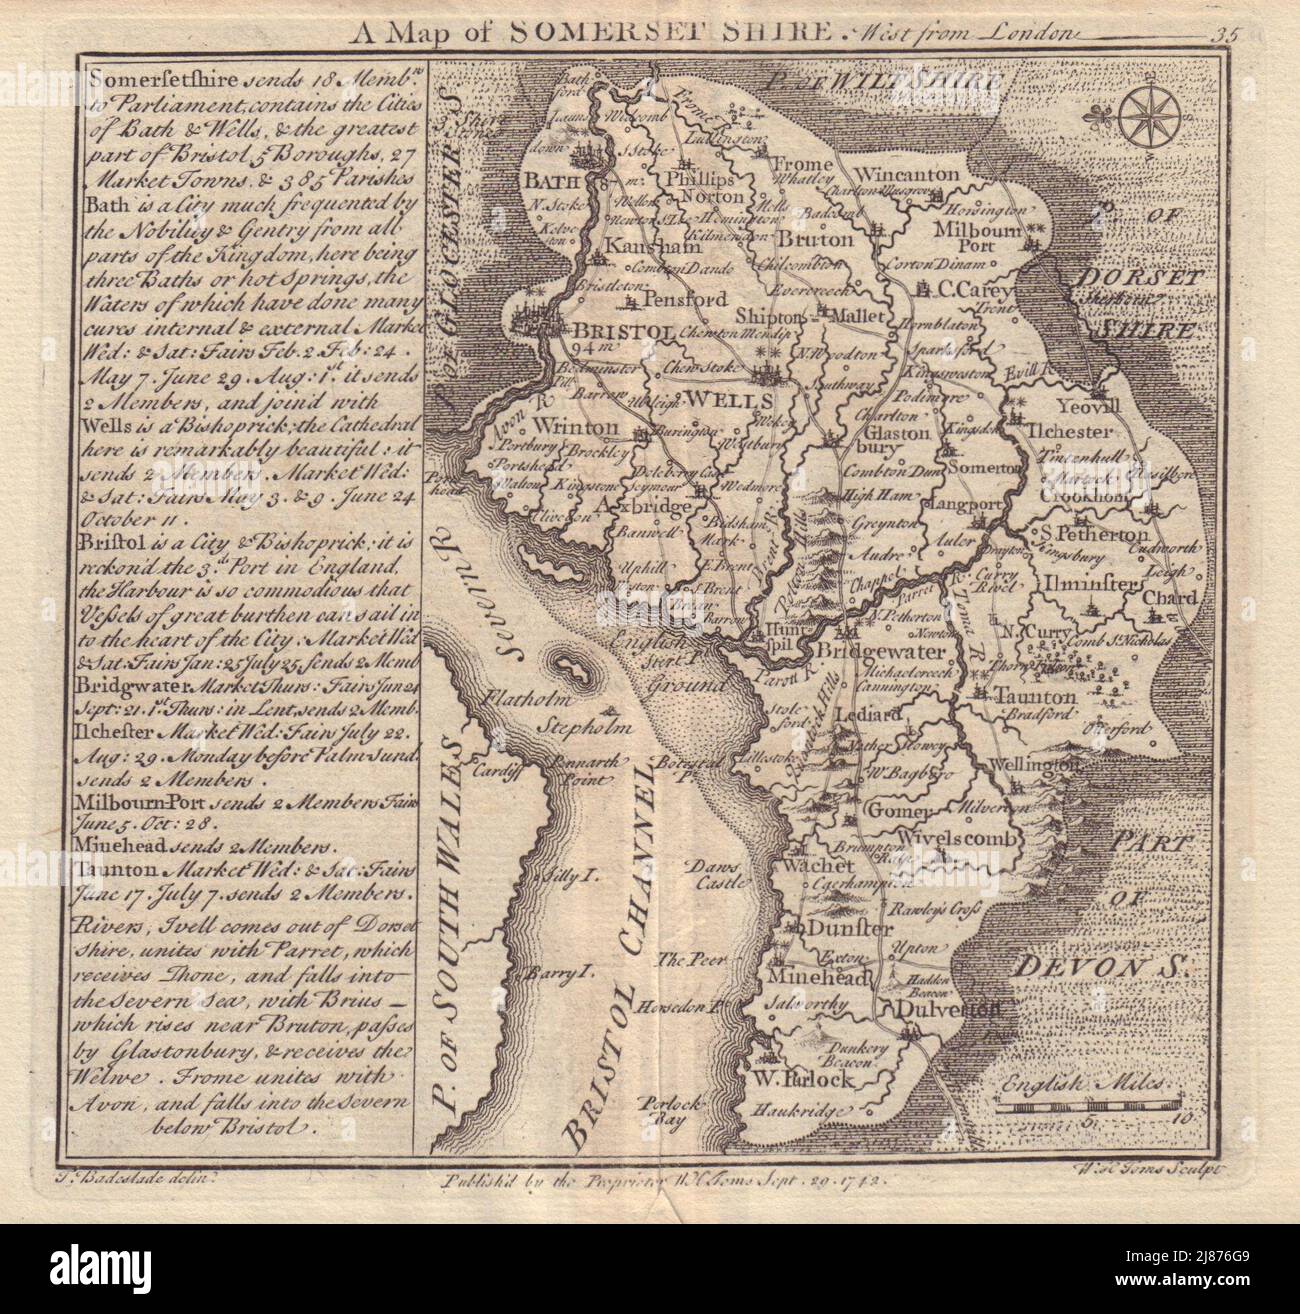 Antike Grafschaft Landkarte von Somersetshire von Badeslade & Toms. Ost-Ausrichtung 1742 Stockfoto